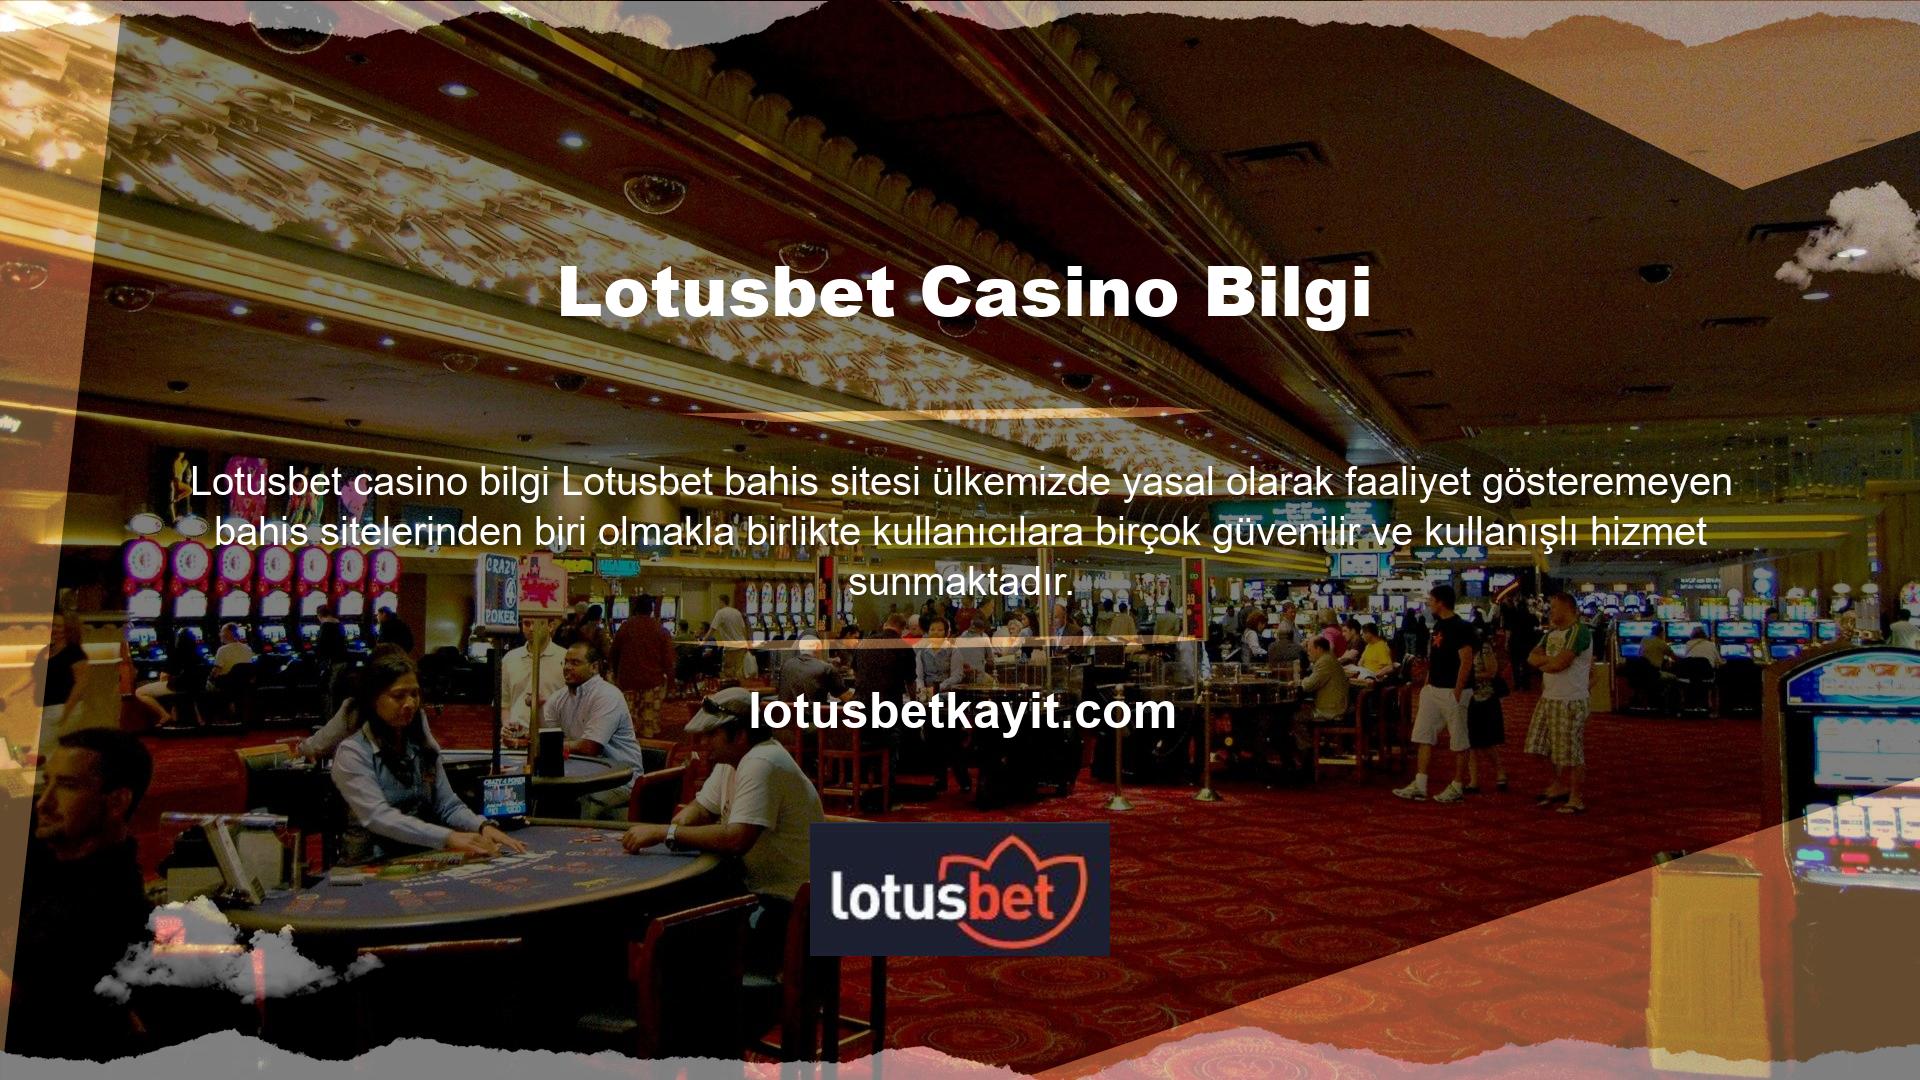 Lotusbet casino bilgi lisanslı bahis sitelerinin kullanıcılarına sunduğu güvenilir hizmetlerden bazıları şunlardır: Geniş casino ve oyun seçenekleri